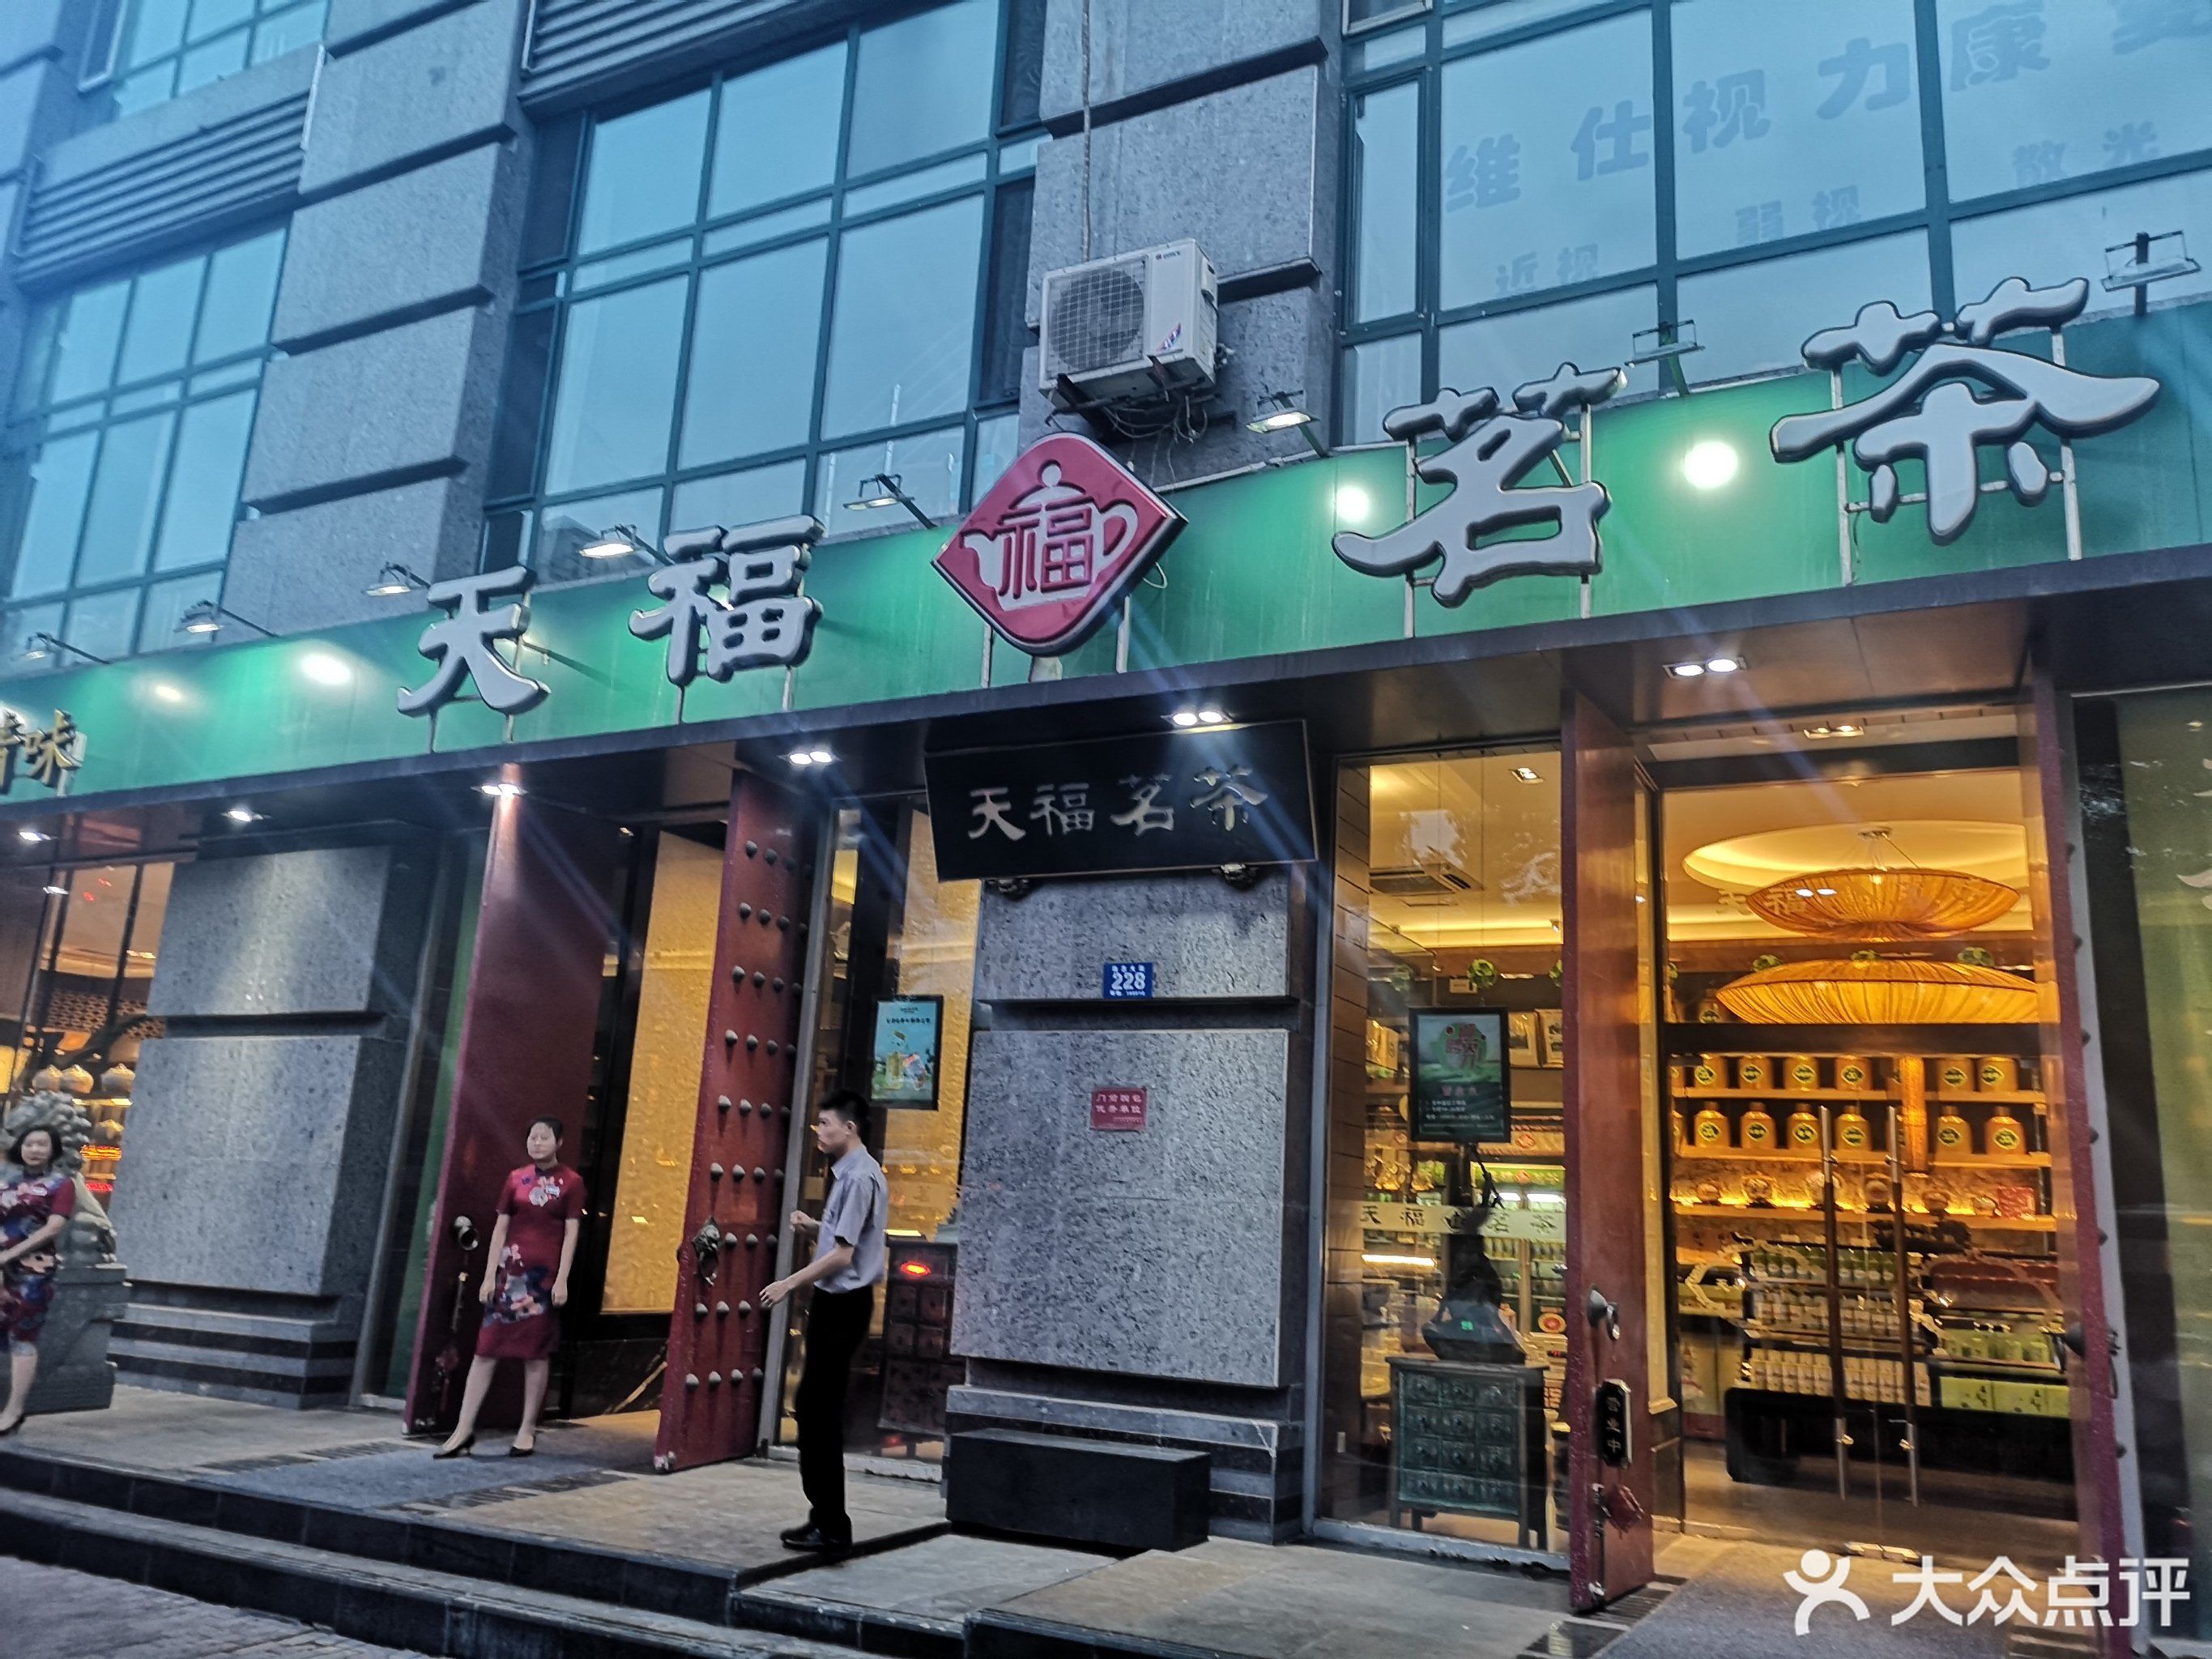            天福茗茶(文化店)